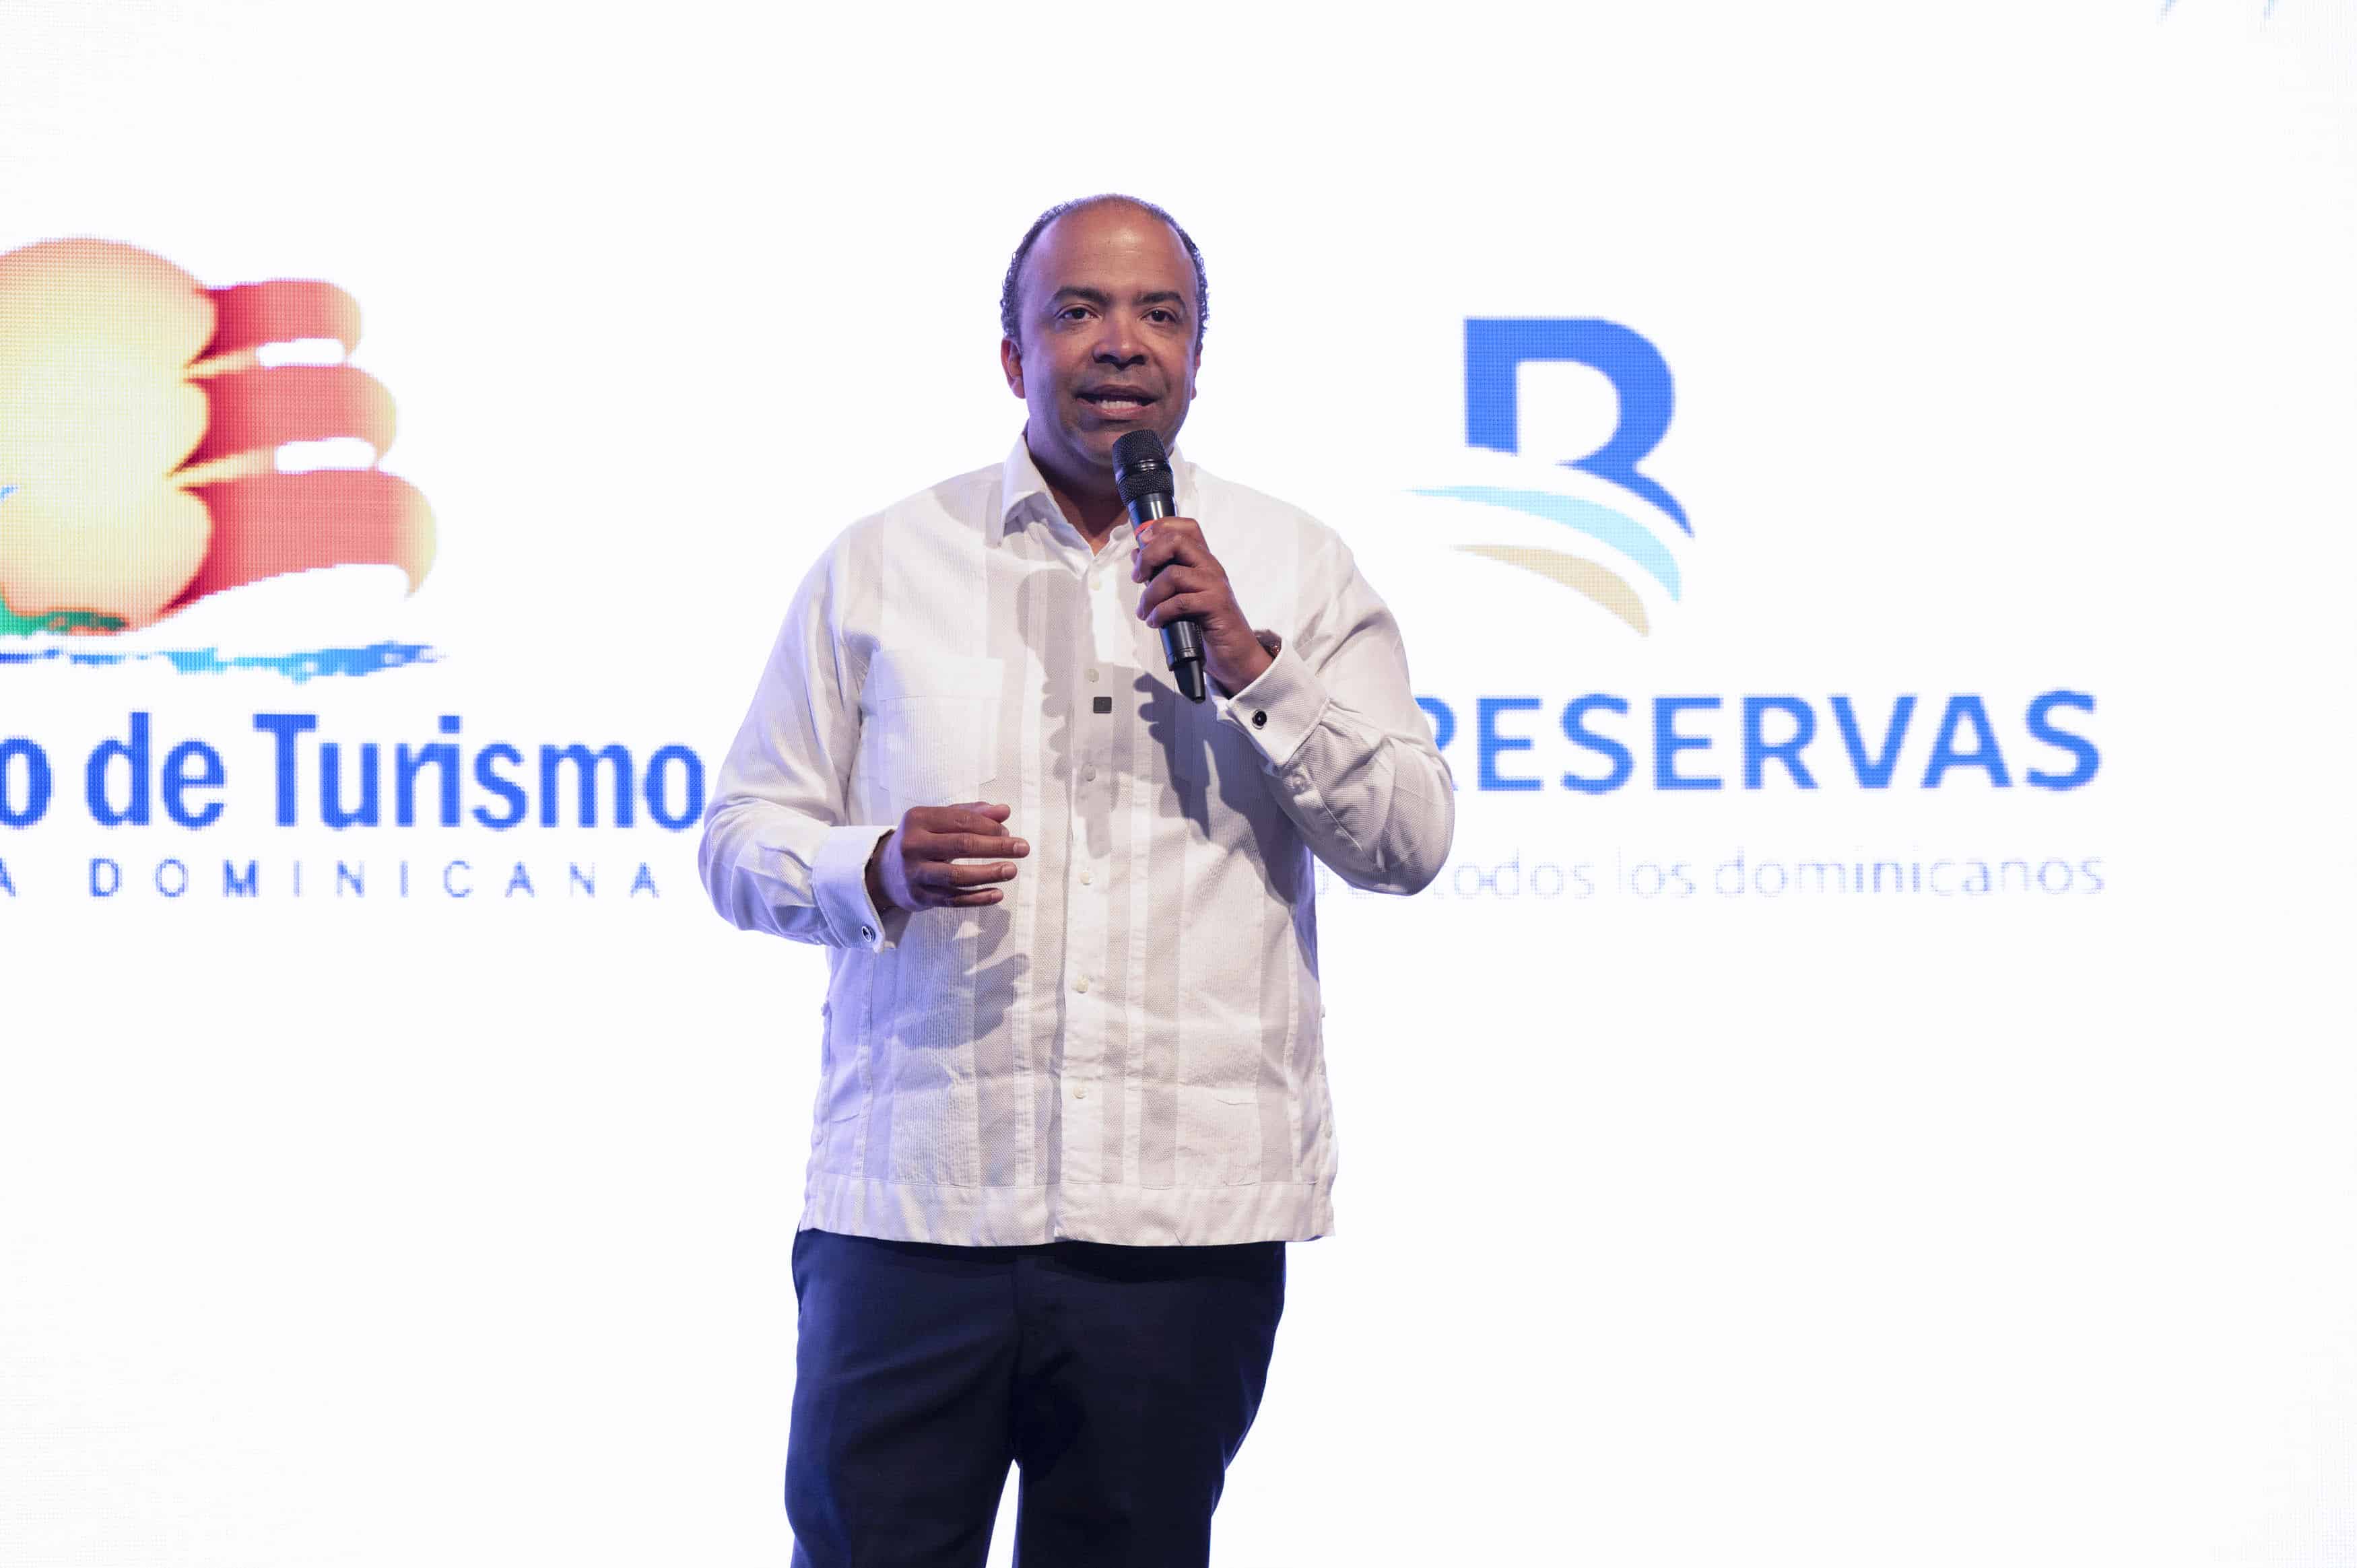 El administrador general de Banreservas, Samuel Pereyra, expresa su gratitud al consejo de ejecutivo de la Organización Mundial del Turismo (OMT) en la cena de gala organizada por la entidad financiera y el Ministerio de Turismo.